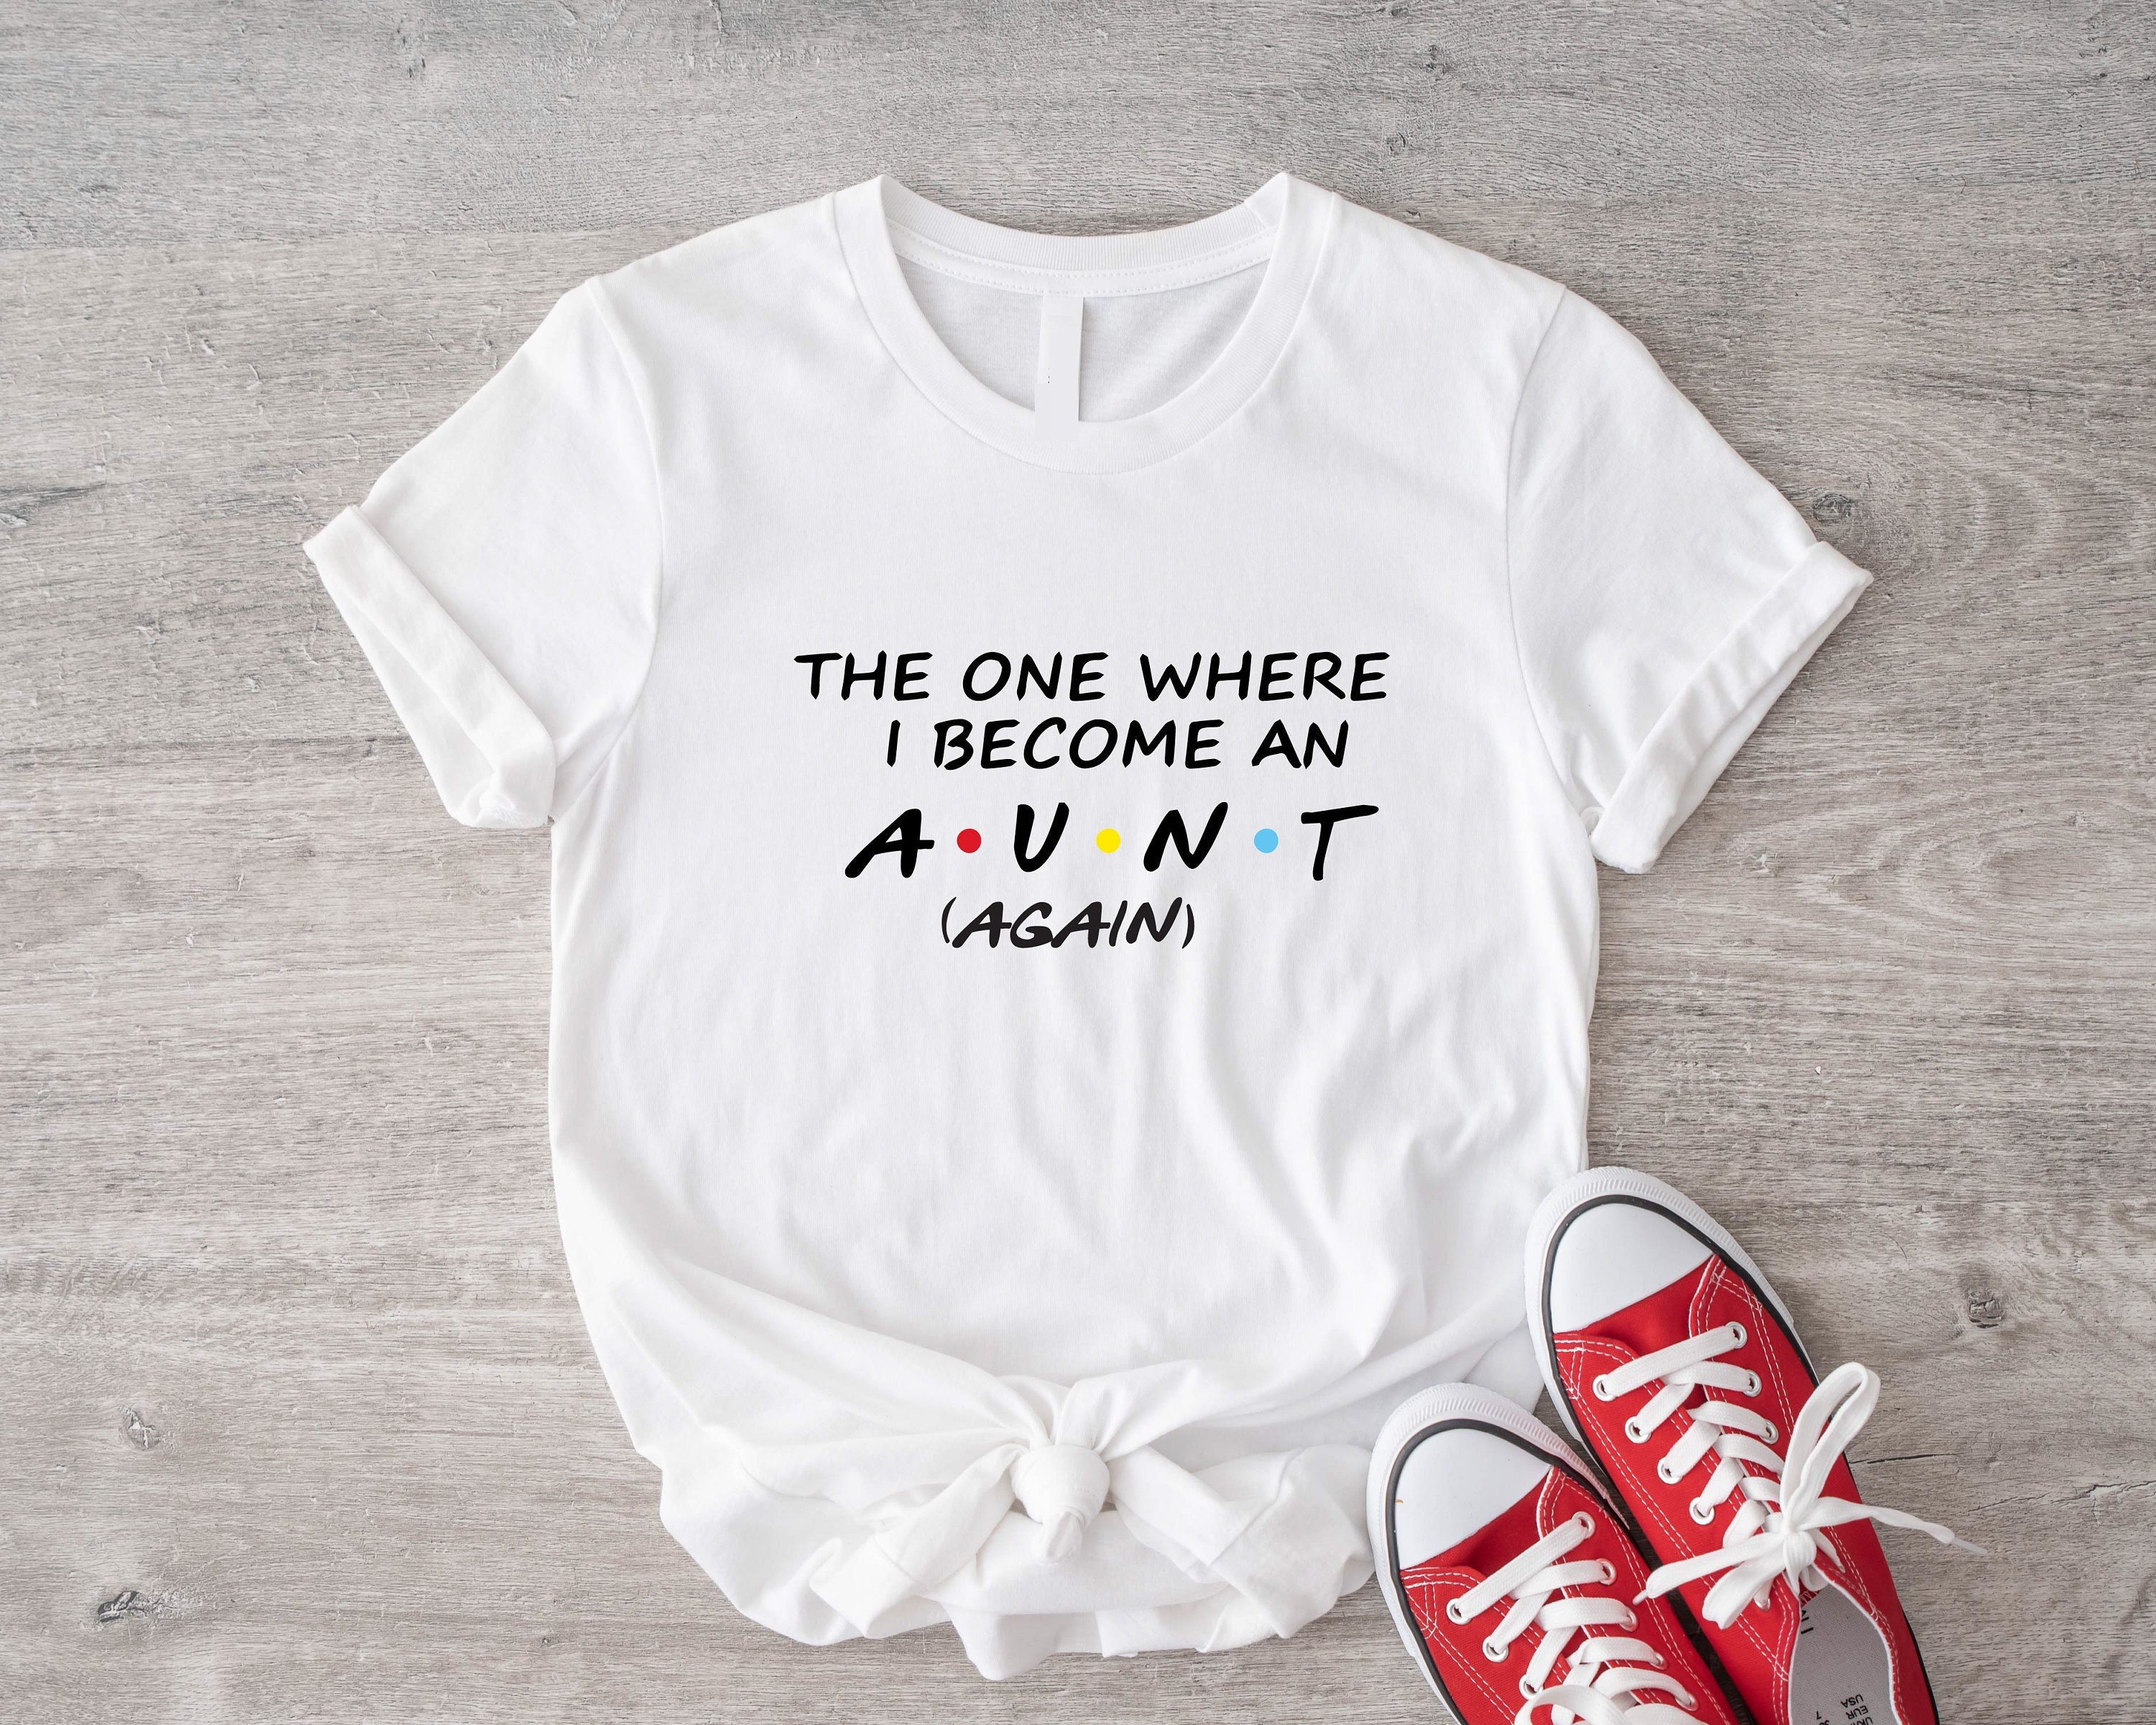 Vas a ser Tía | Camiseta para niños